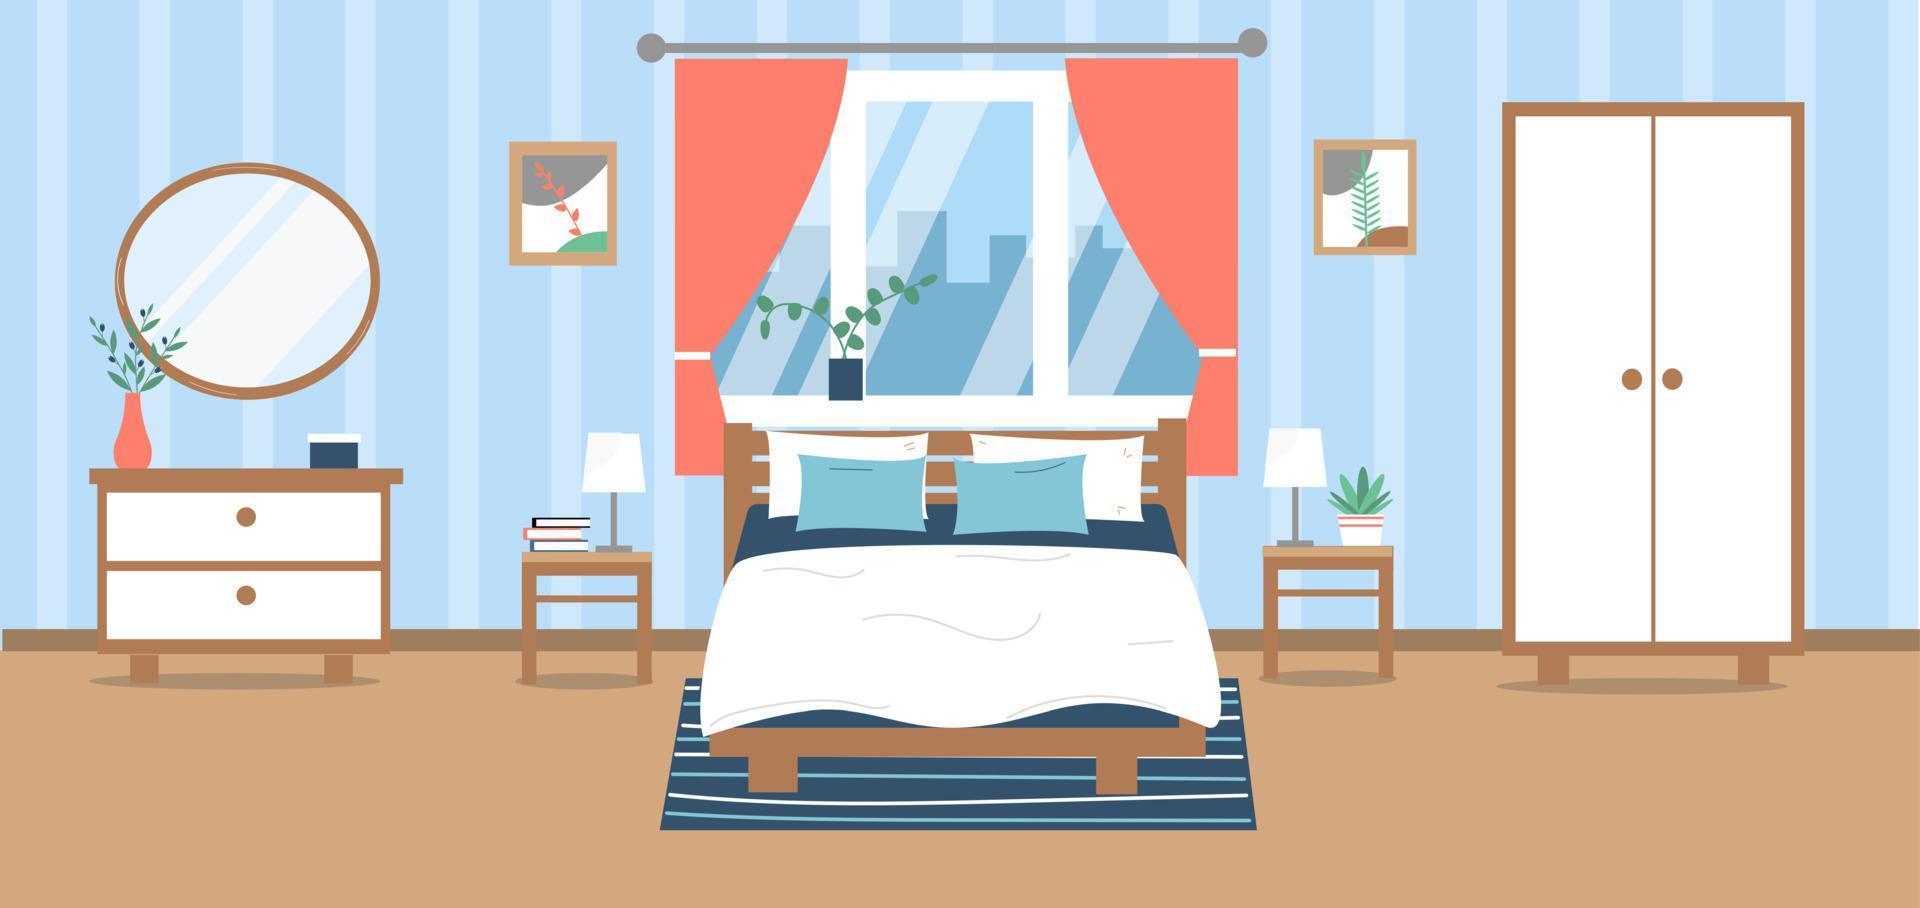 modern sovrum interiör. säng, garderob, garderob, växter, bilder, dekoration. vektor illustration i platt stil.